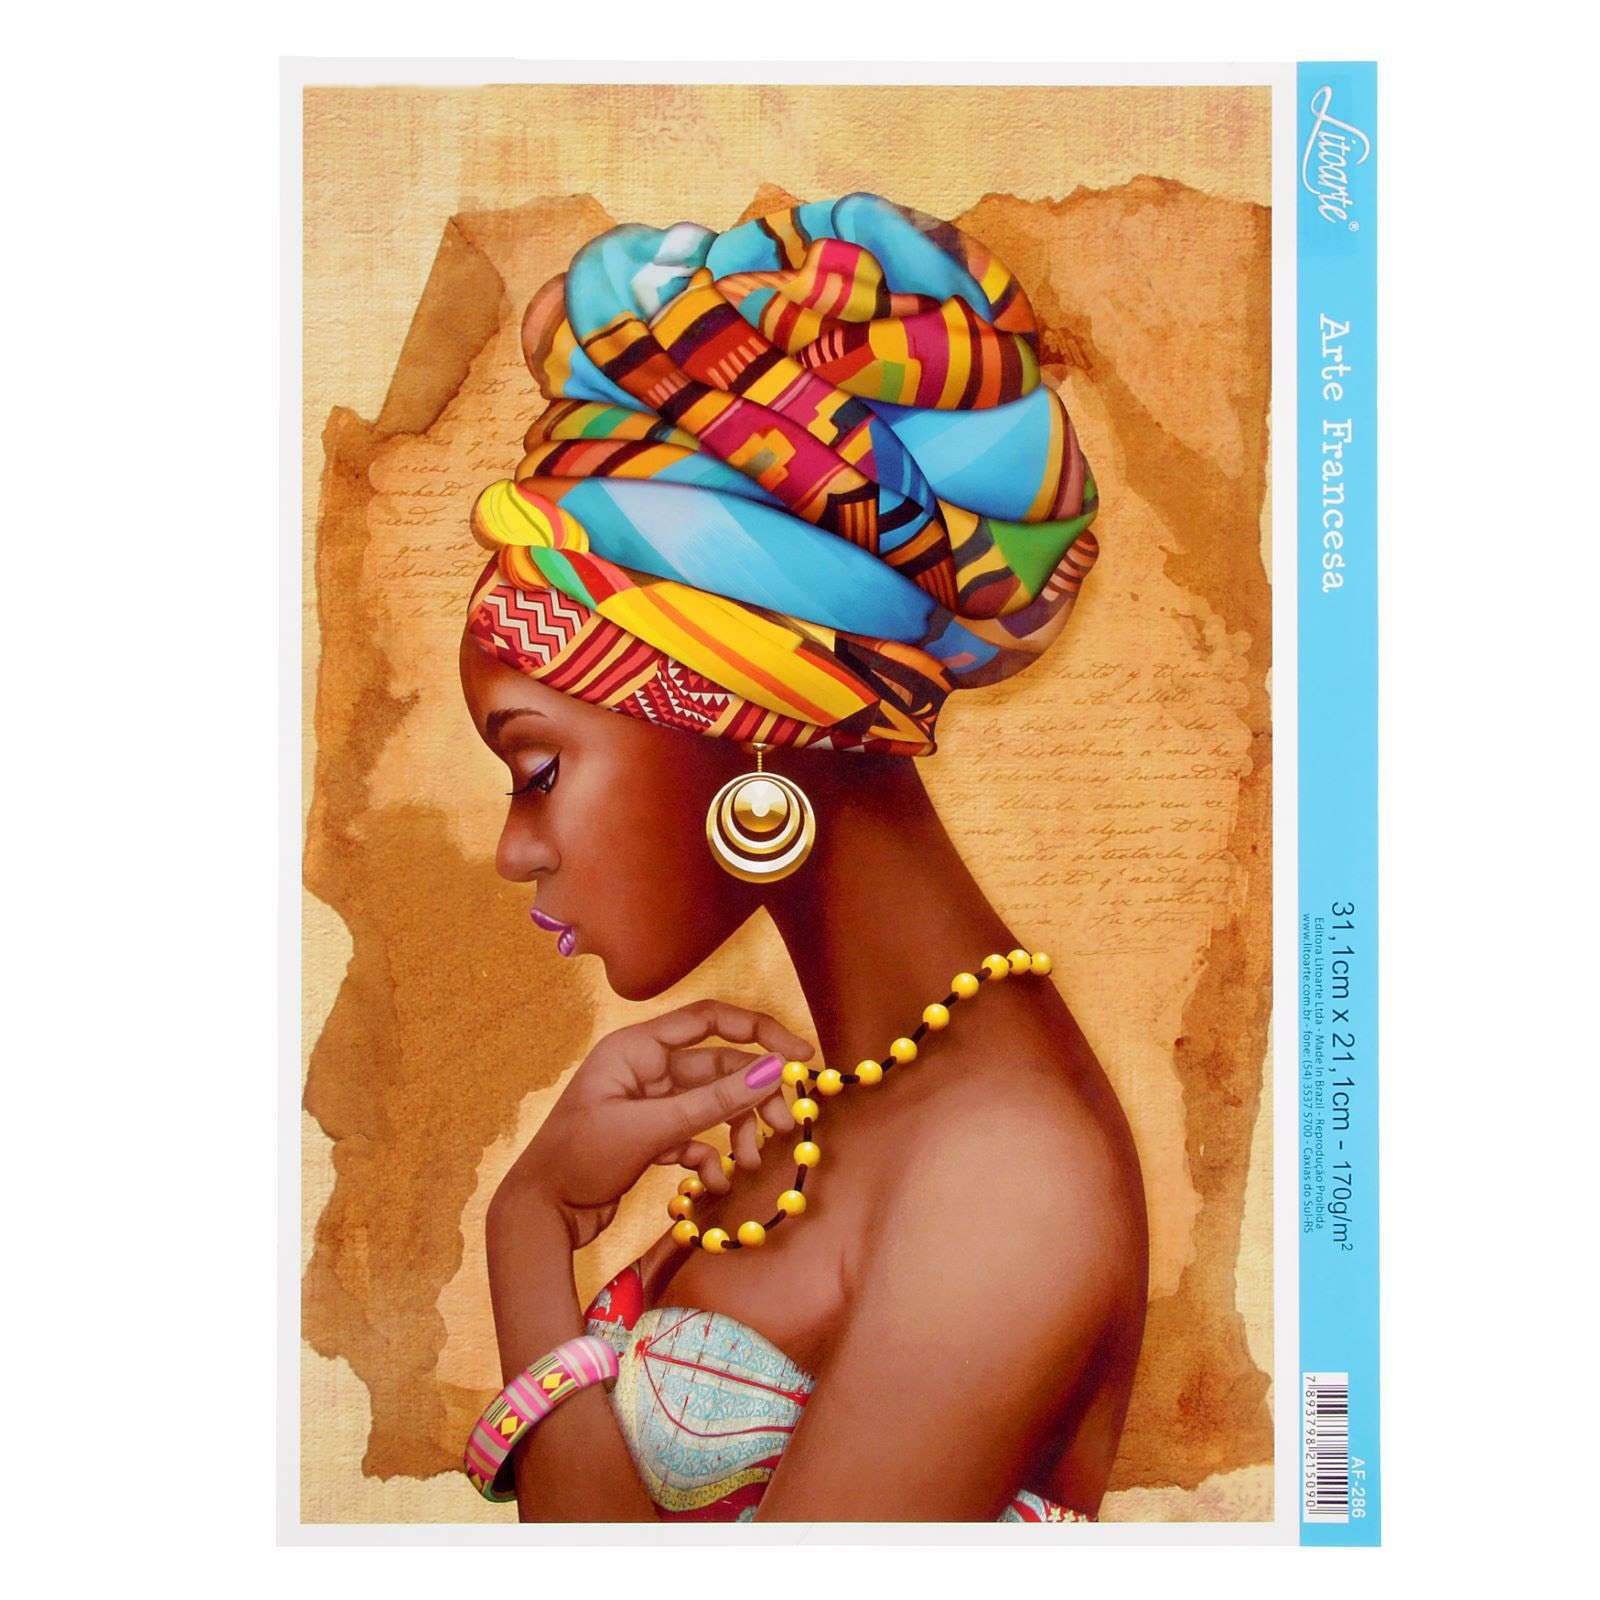 Негритянка в джунглях. Картины в африканском стиле. Африканские женщины. Портрет африканской женщины. Африканские мотивы в живописи.